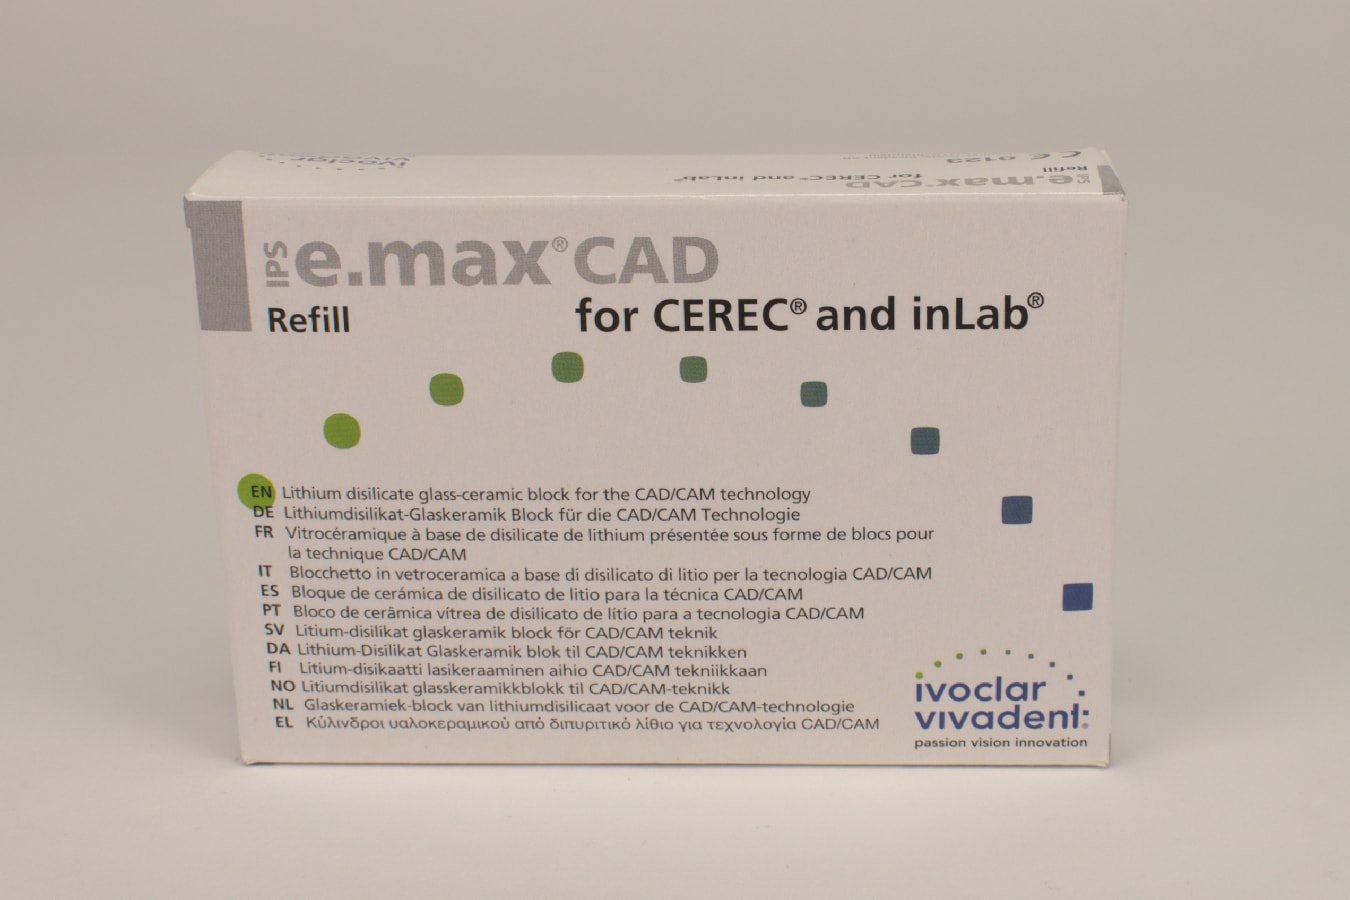 IPS e.max CAD Cerec/inLab LT B2 B32 3st